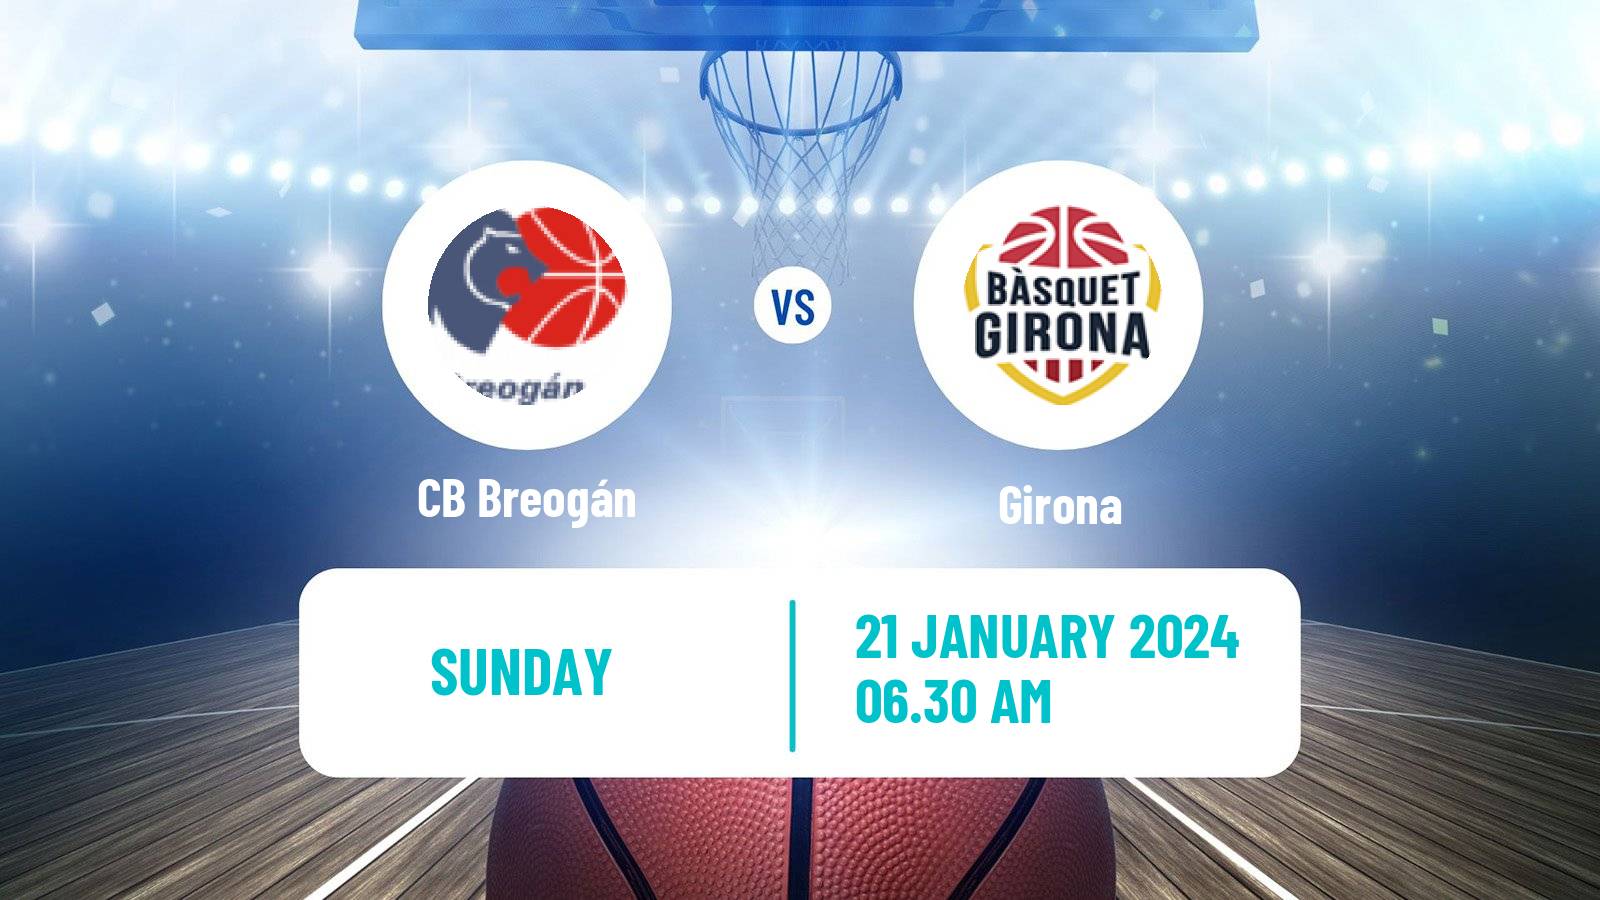 Basketball Spanish ACB League CB Breogán - Girona